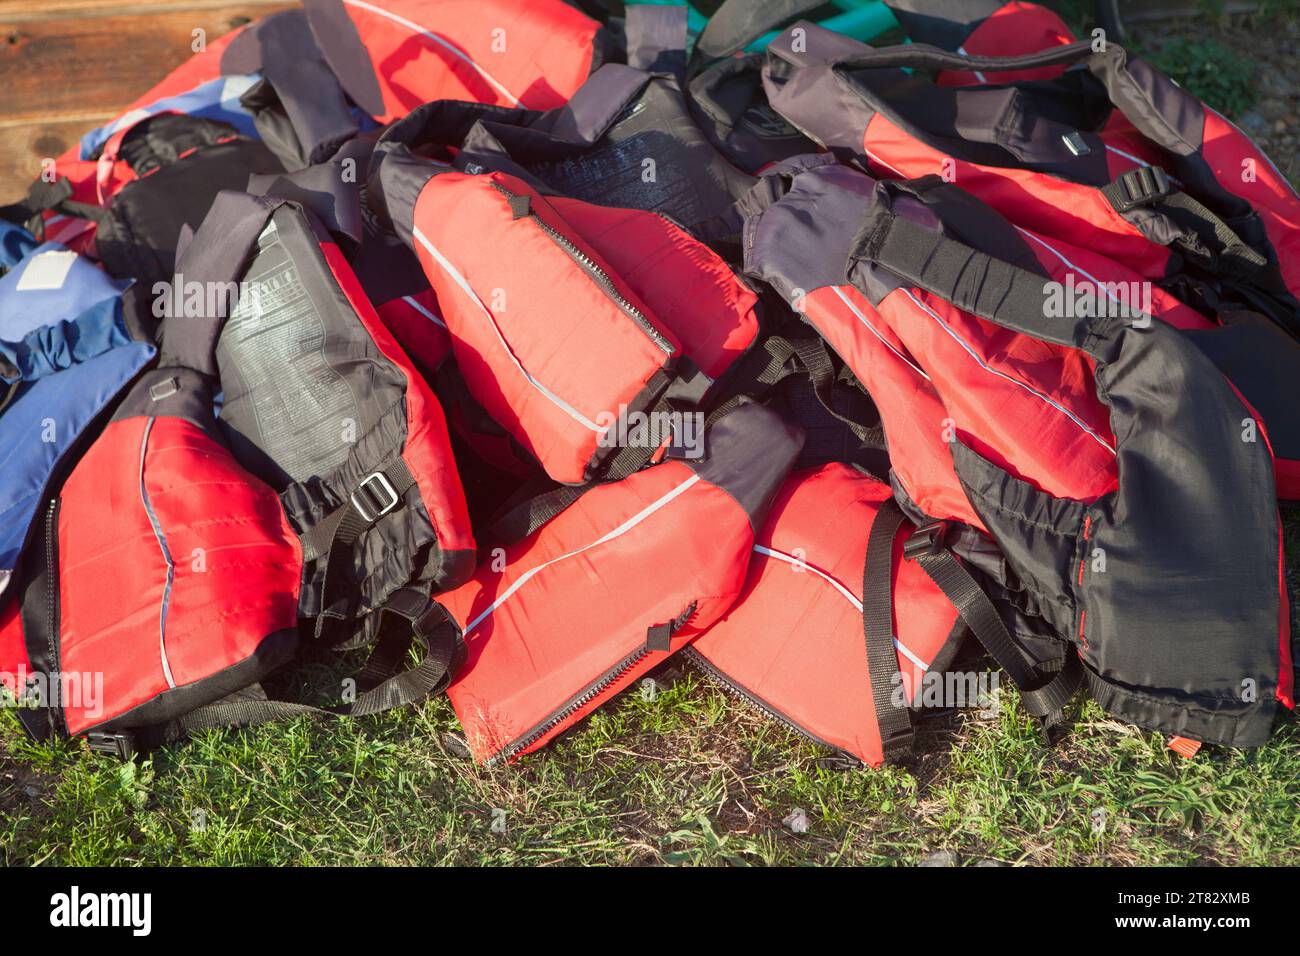 Giubbotti di salvataggio accumulati sull'erba. Concetto di turismo attivo sulle coste di acque dolci Foto Stock